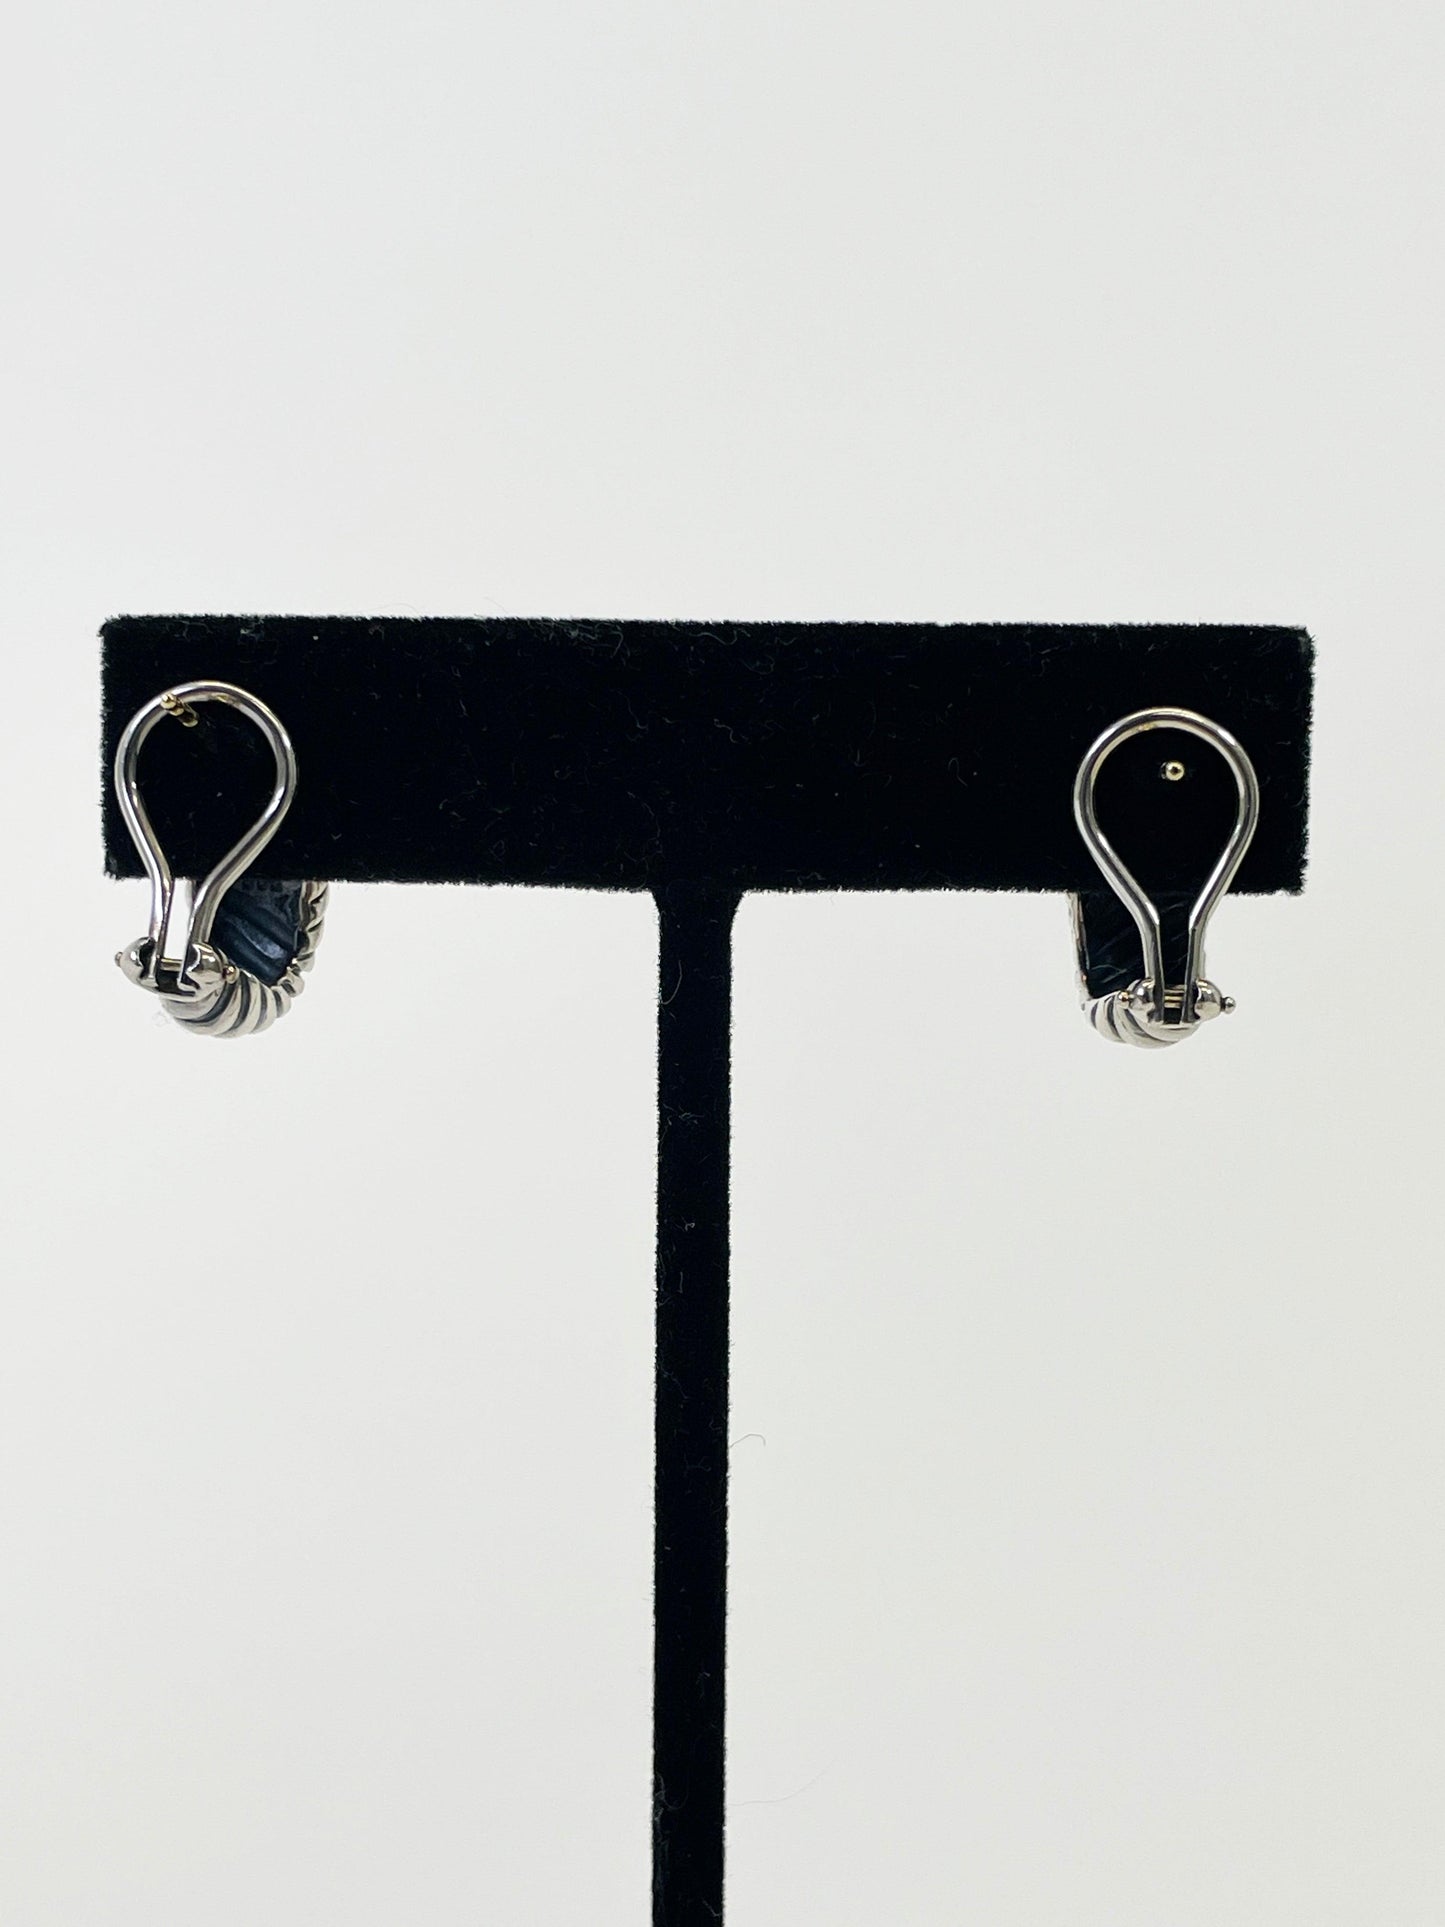 David Yurman "Cable Shrimp" Earrings - Second Nature Boutique